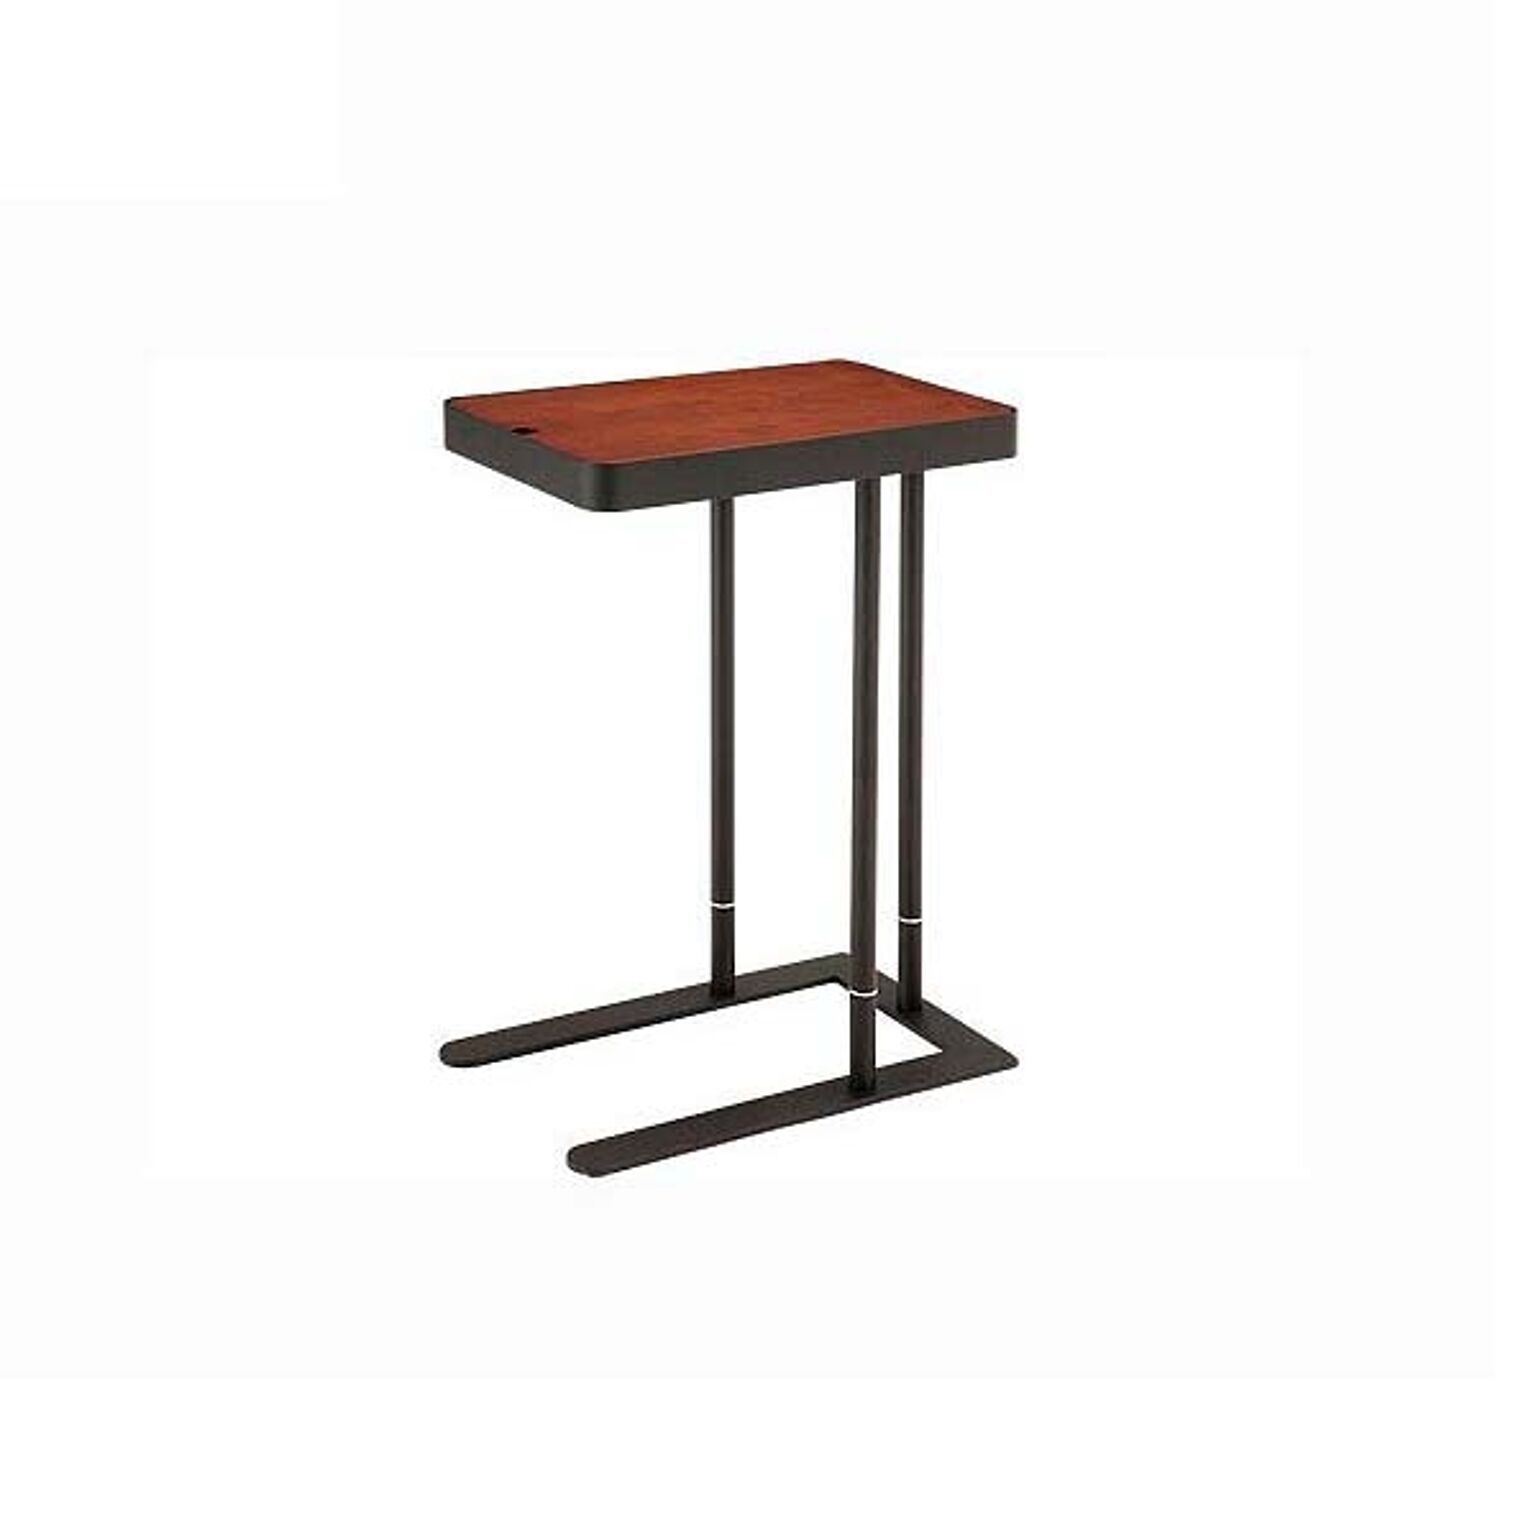 サイドテーブル ブラウン色 幅50 高さ60-70 長方形テーブル 天然木 ウォールナット 2段階高さ調節可 天板下収納付 スチール コーヒーテーブル ナチュラル ノエル SST810 北欧テイスト